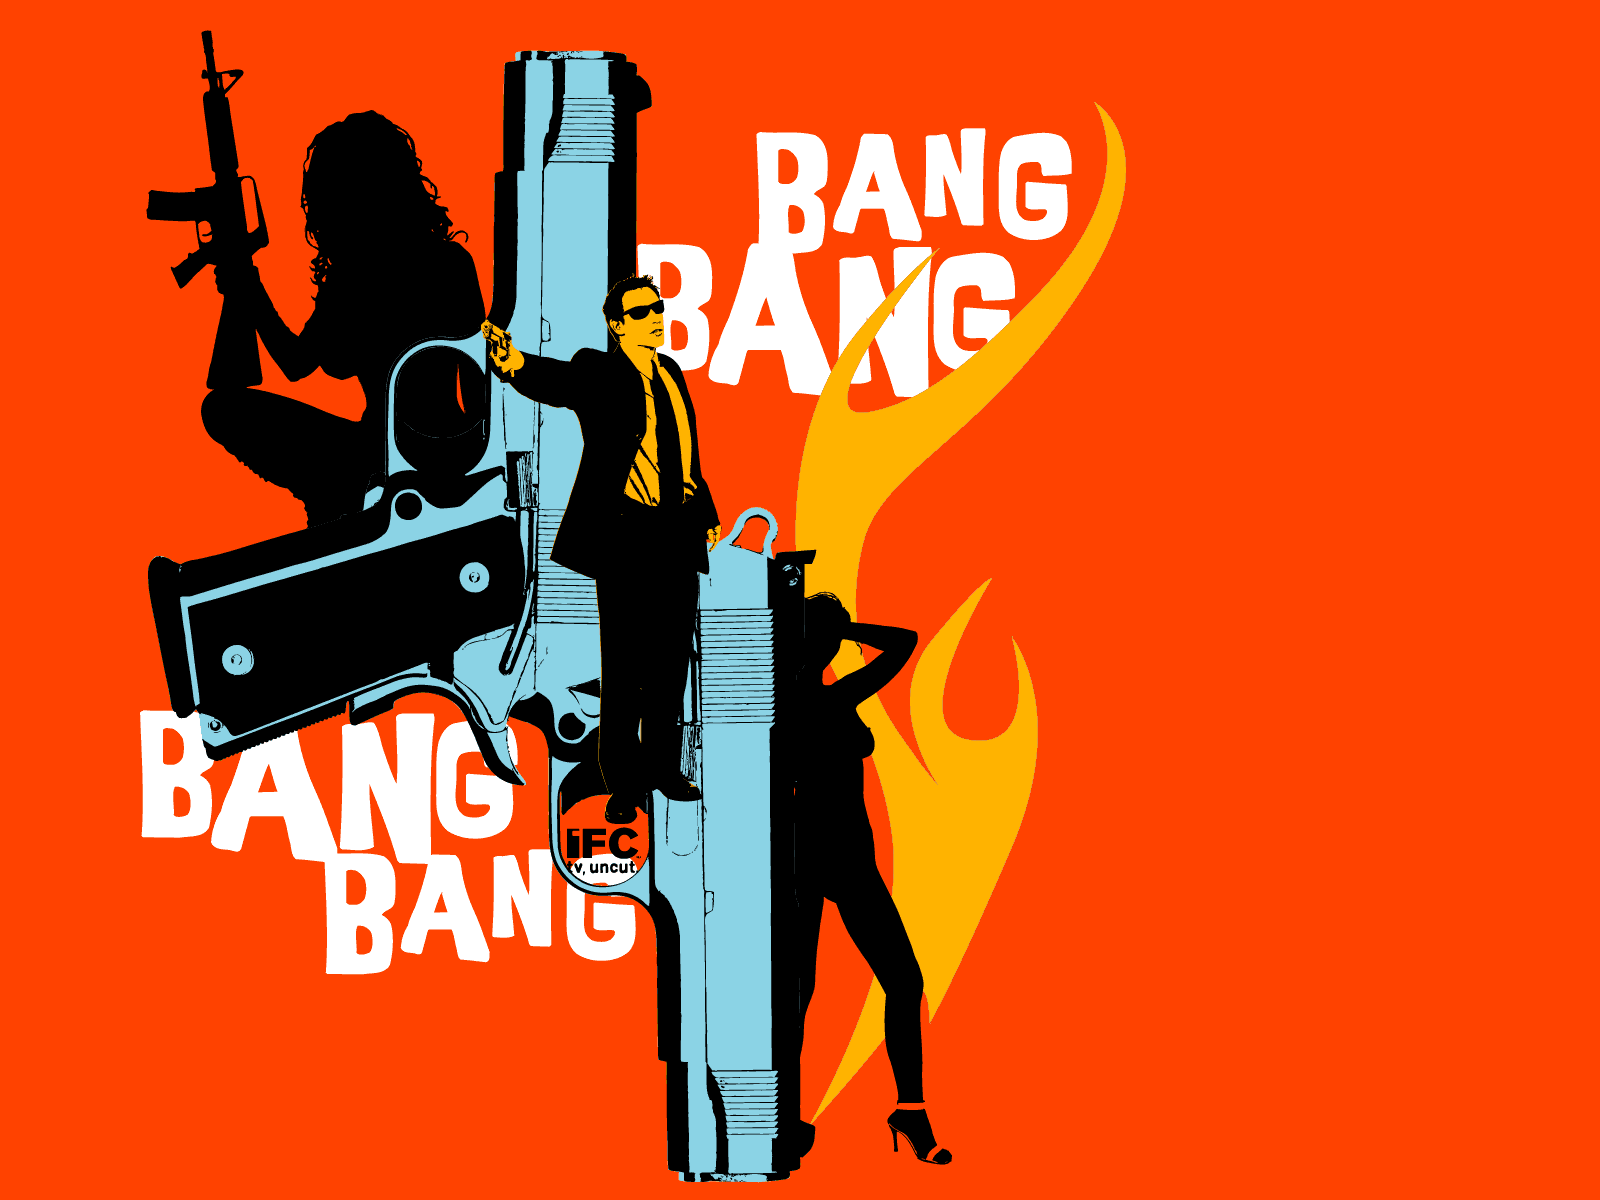 Bang bang opening. Bang. Ban ban. G-ba. Bang картинка.